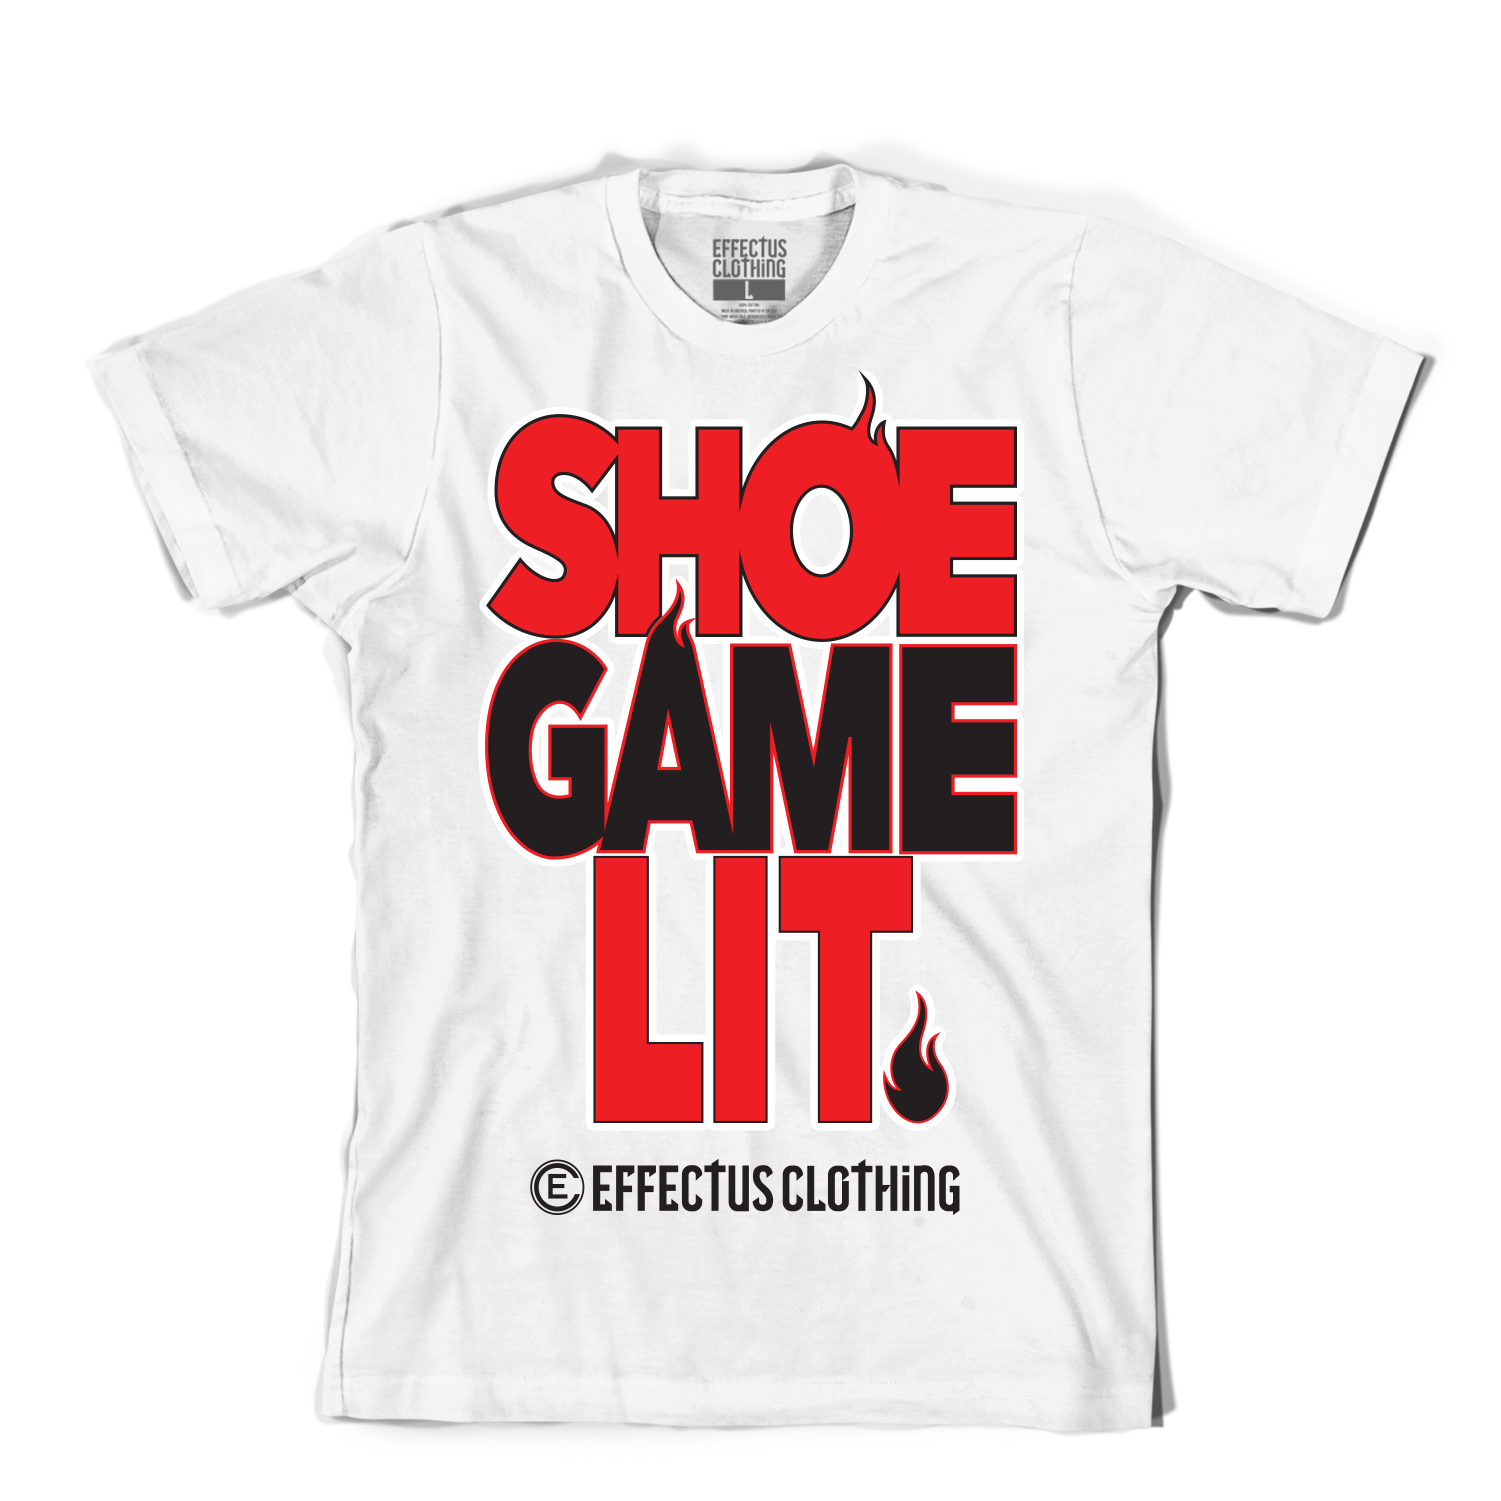 Shoe Game Lit